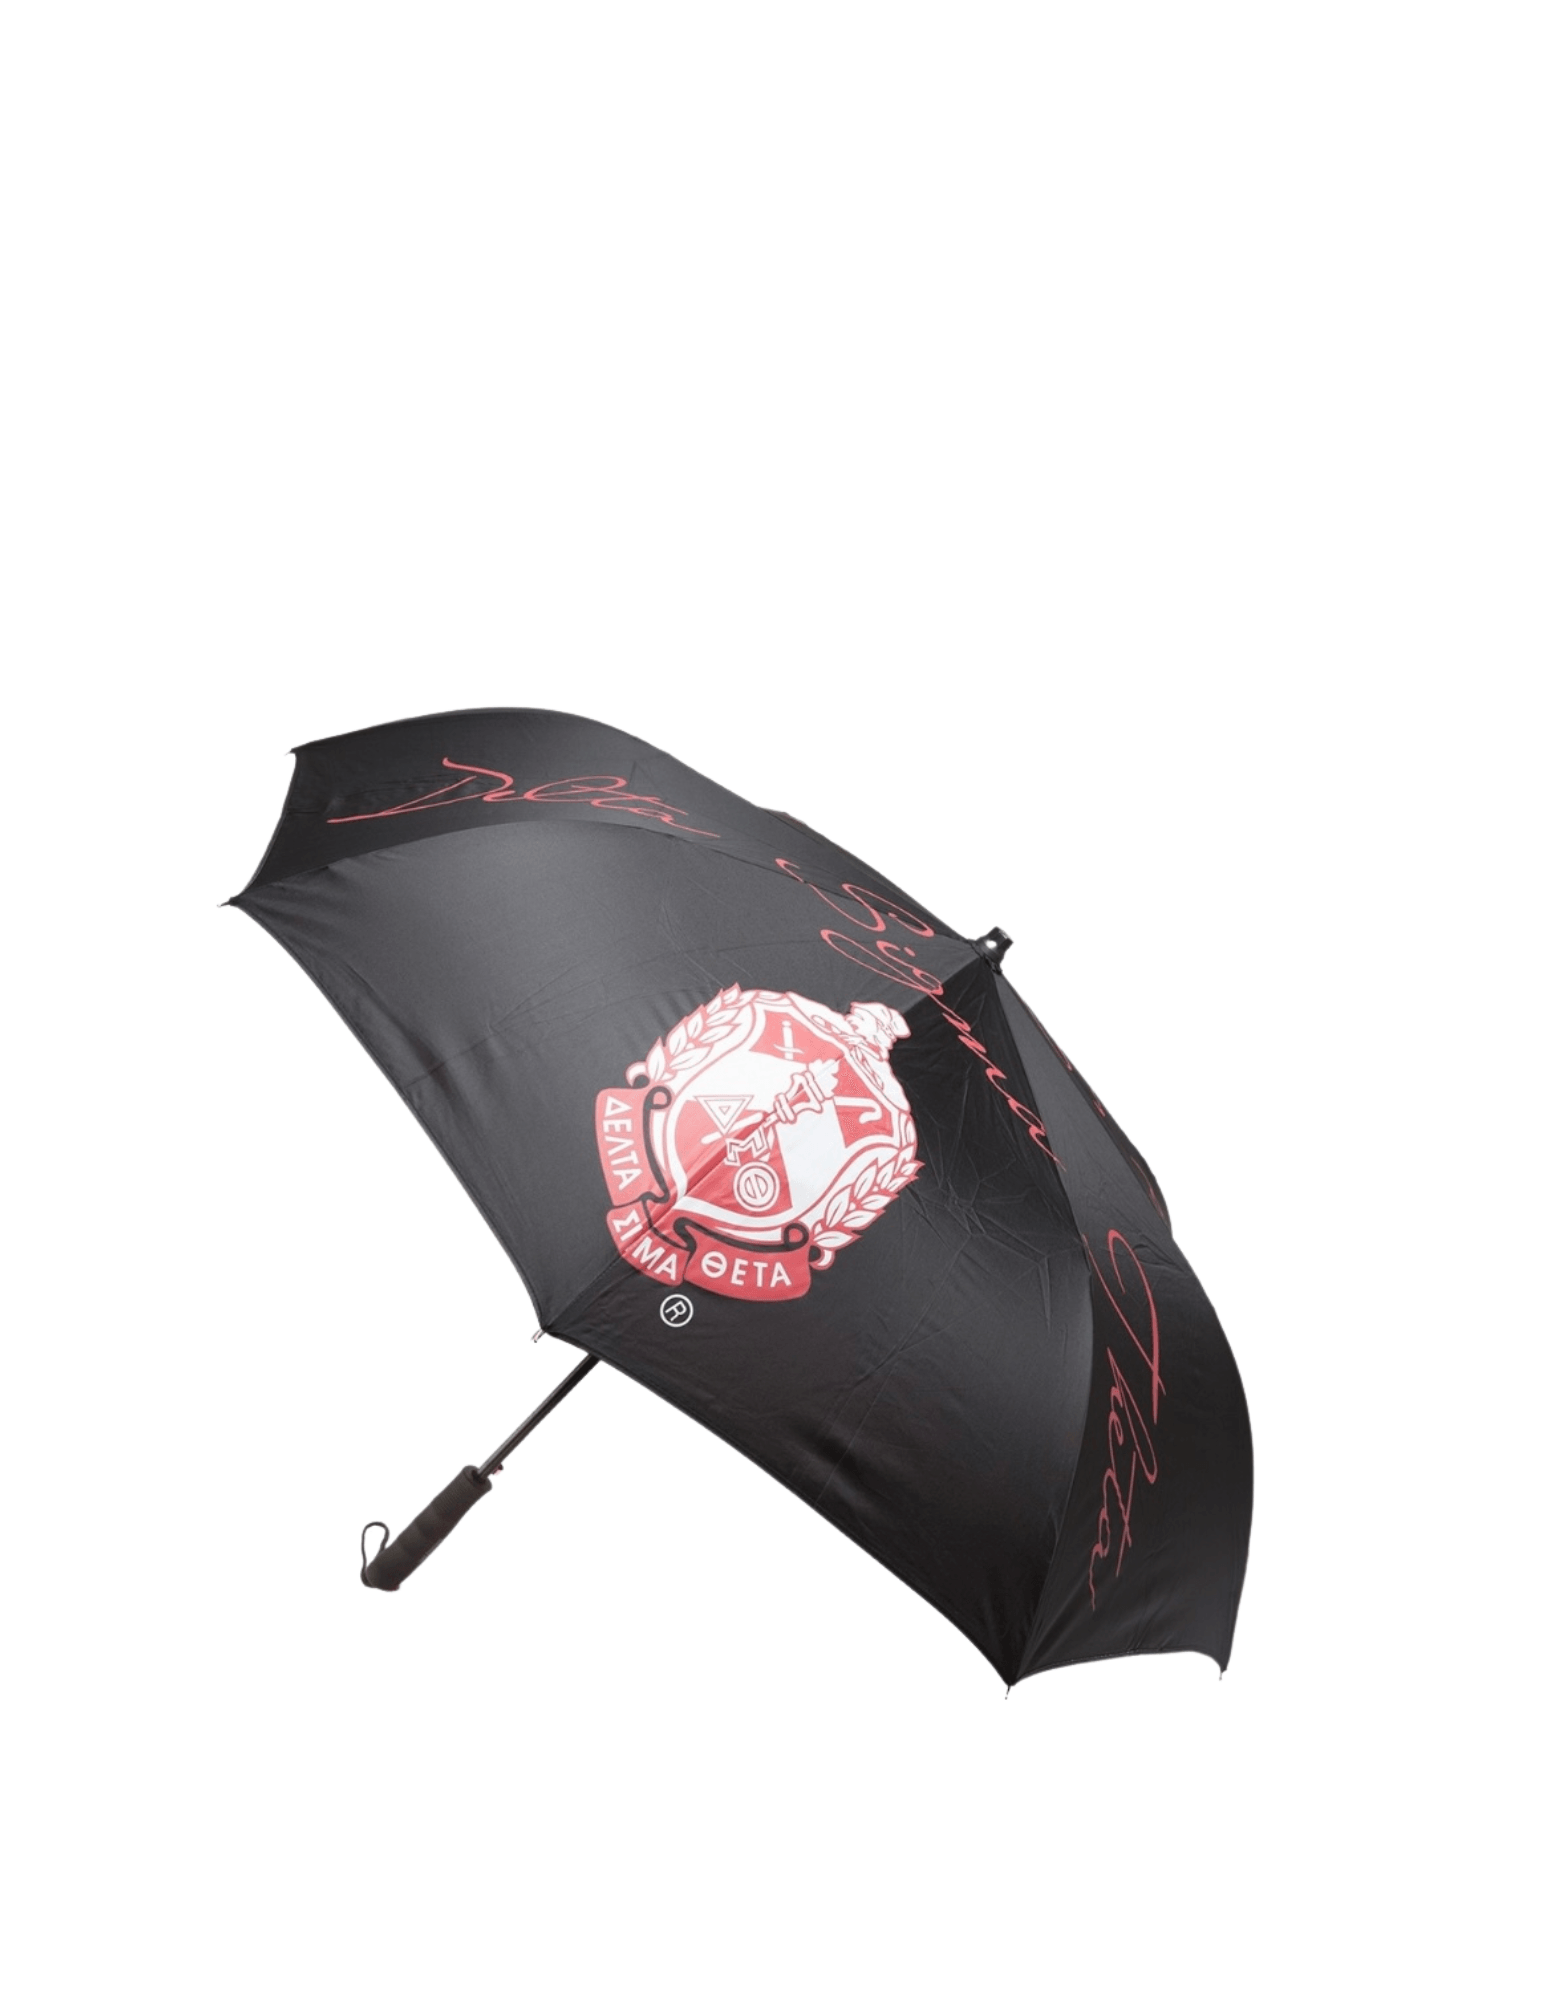 Black Inverted DST Signature Umbrella